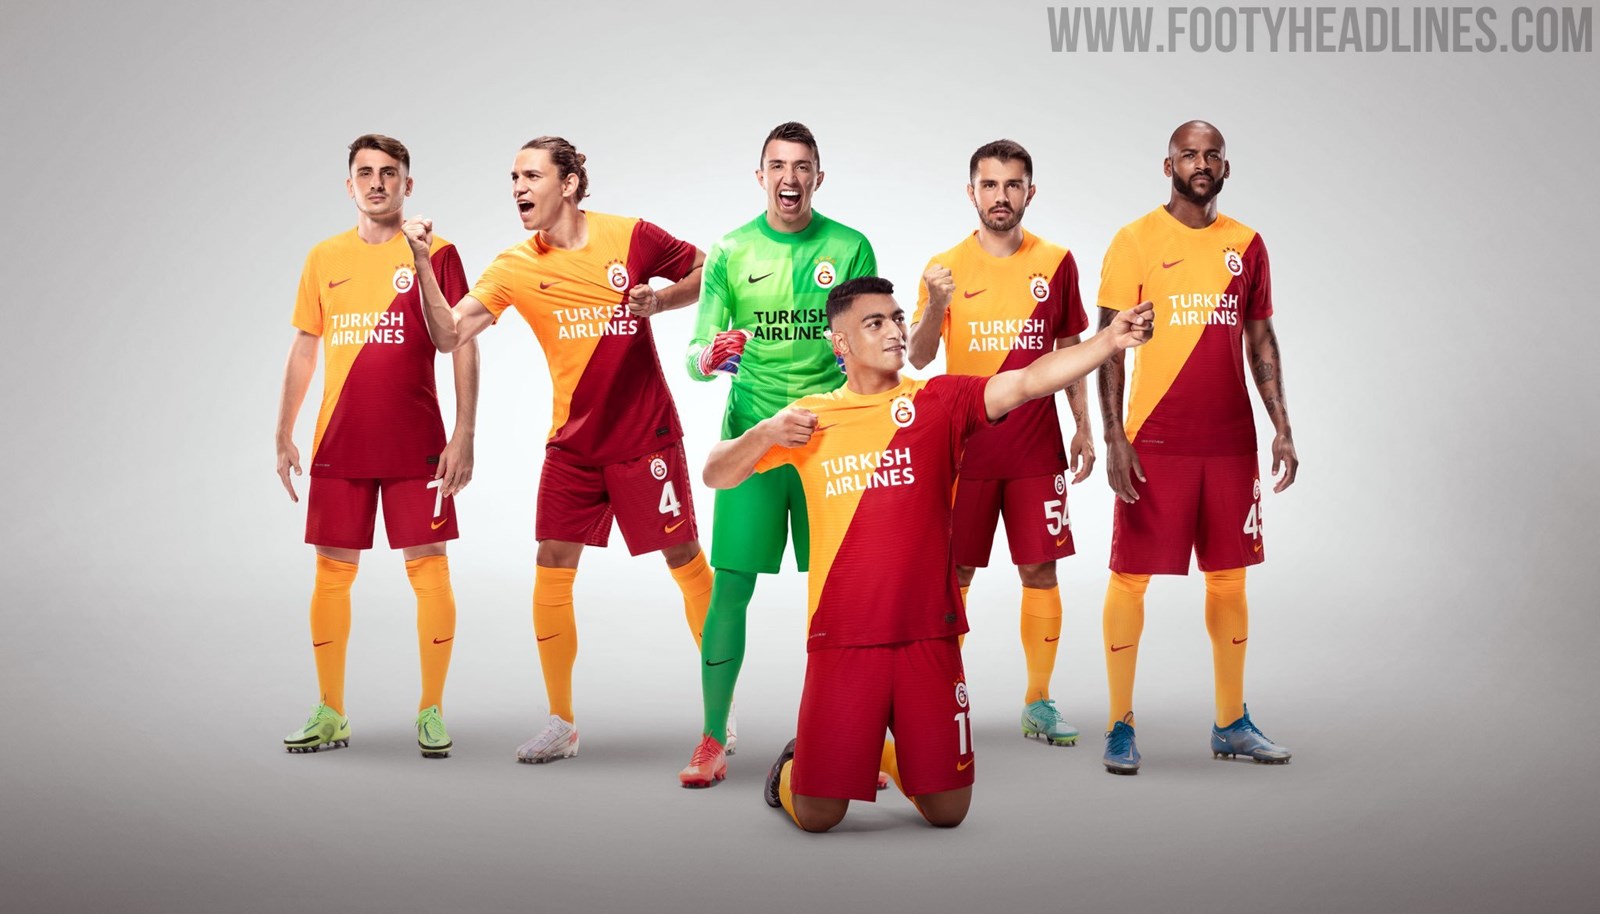 Situatie Oplossen barrière Nike Galatasaray 21-22 Home Kit Released - Footy Headlines